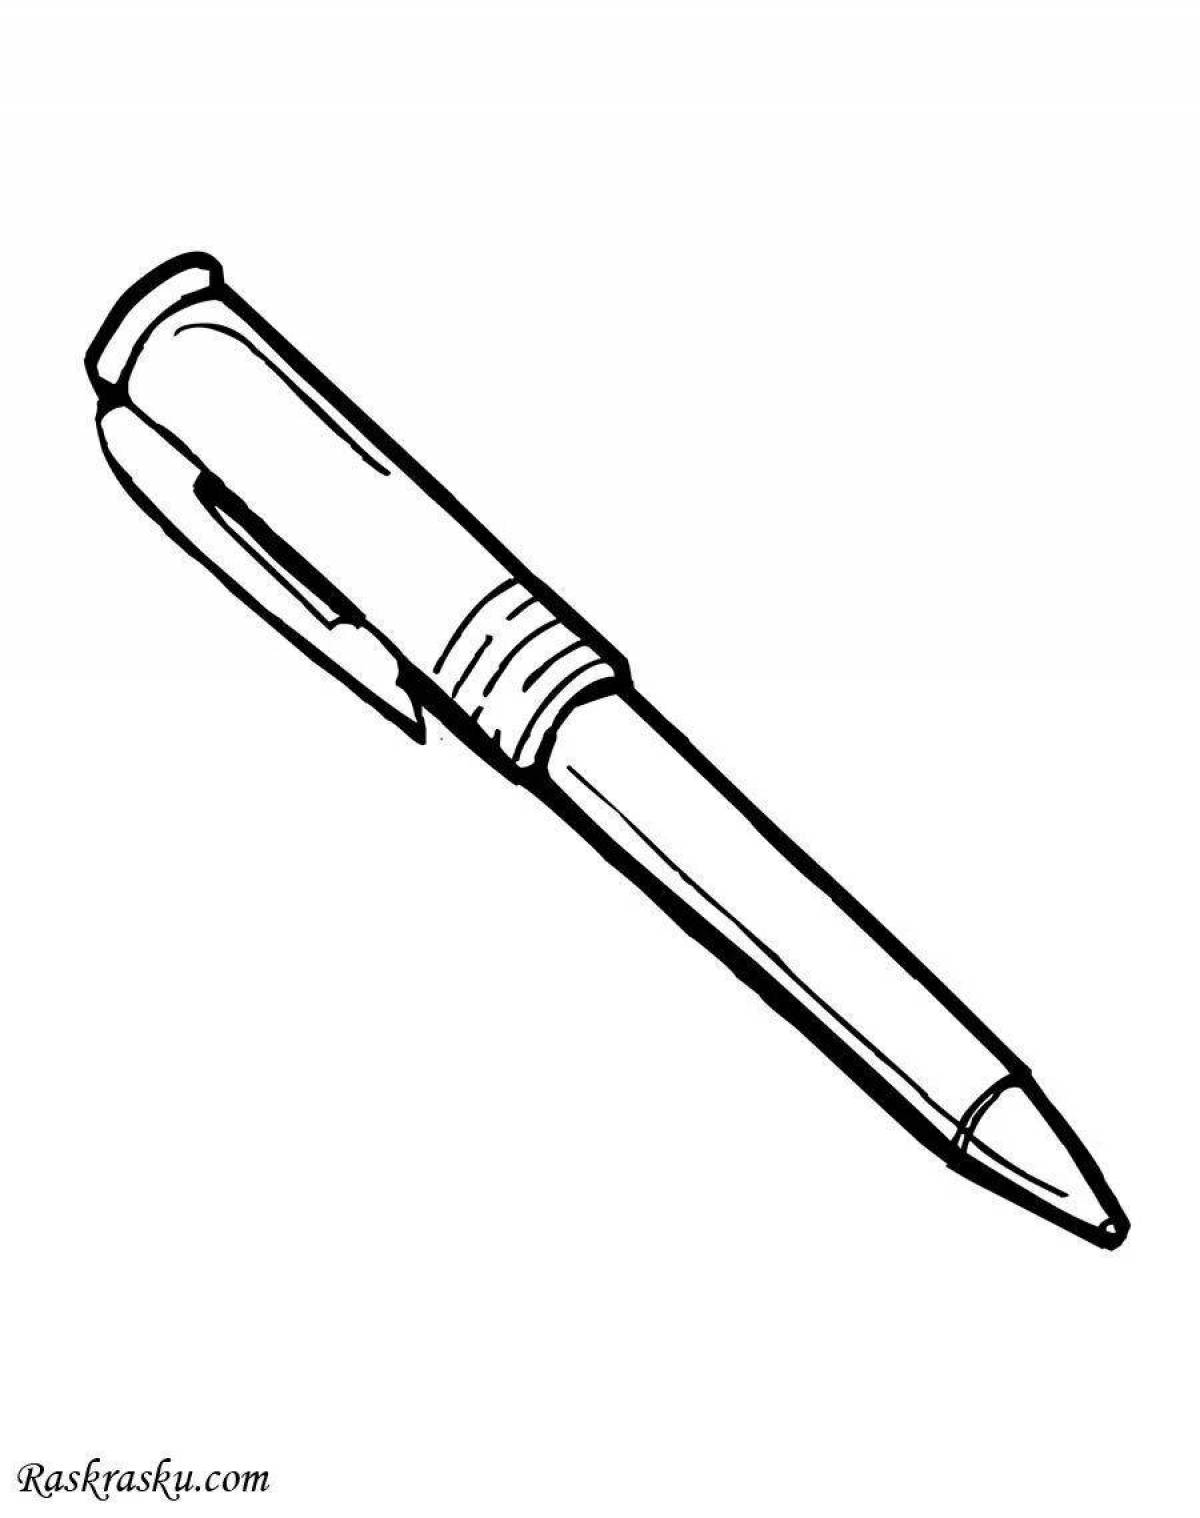 Раскраска жирная шариковая ручка